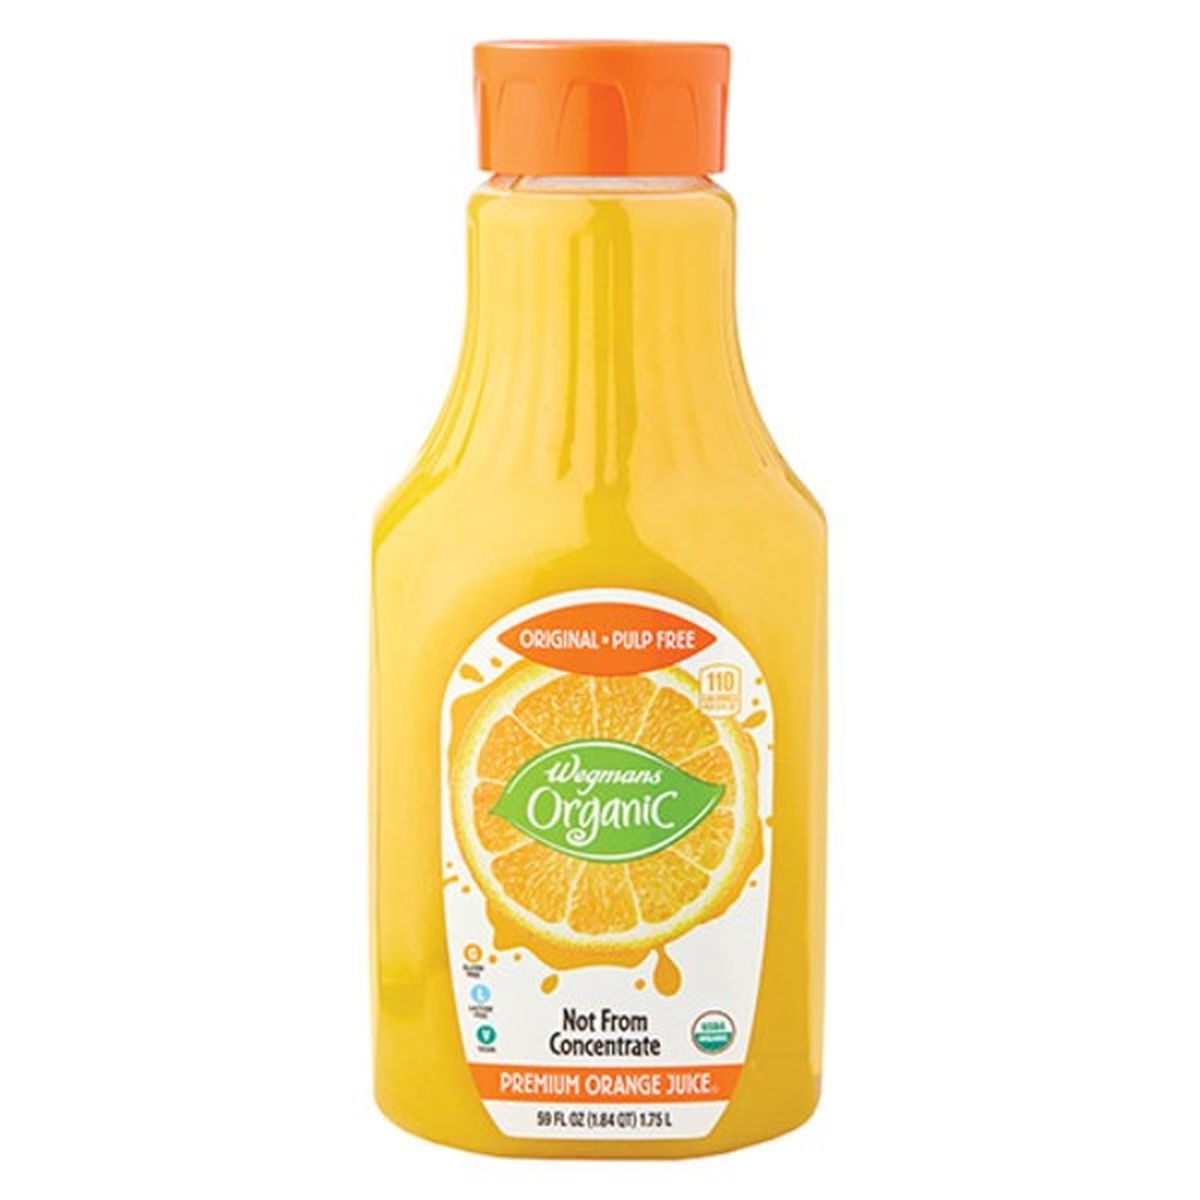 Calories in Wegmans Organic Premium Orange Juice, Original, Pulp Free